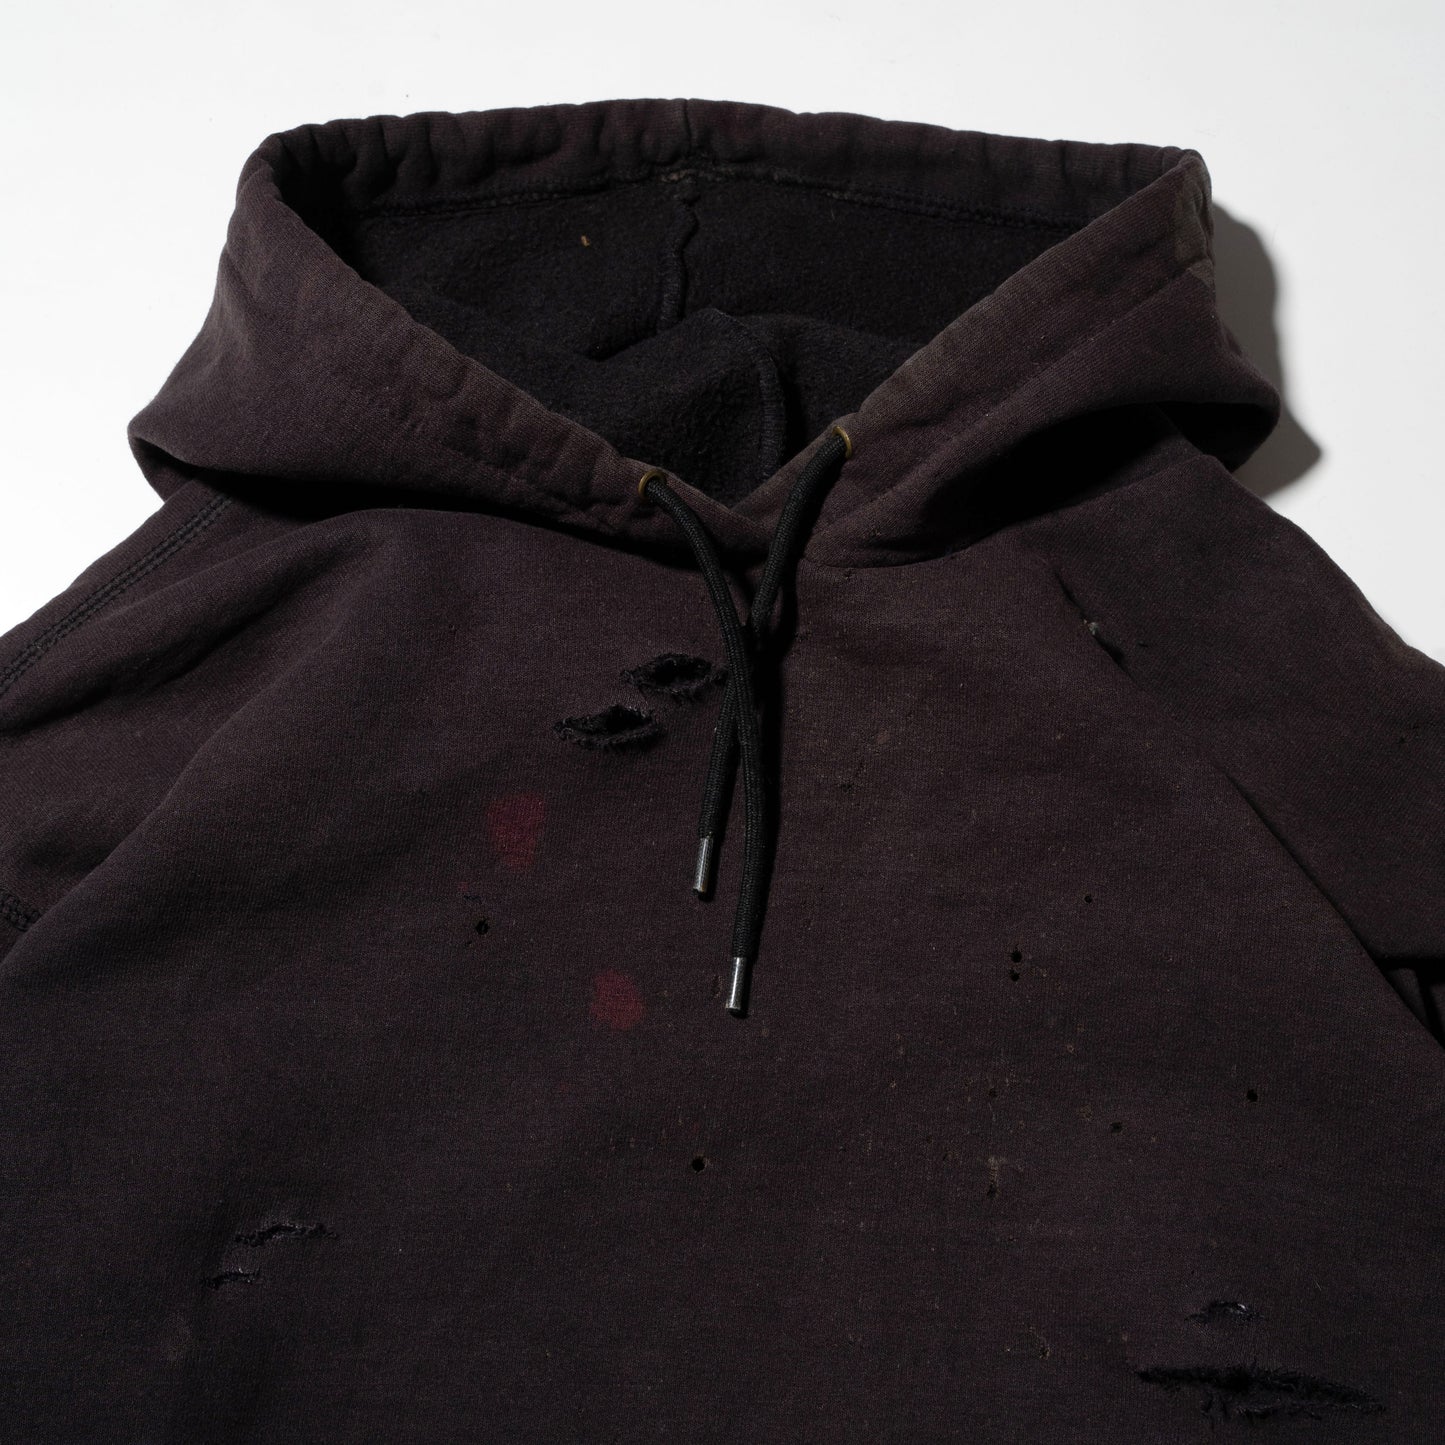 vintage carhartt broken hoodie